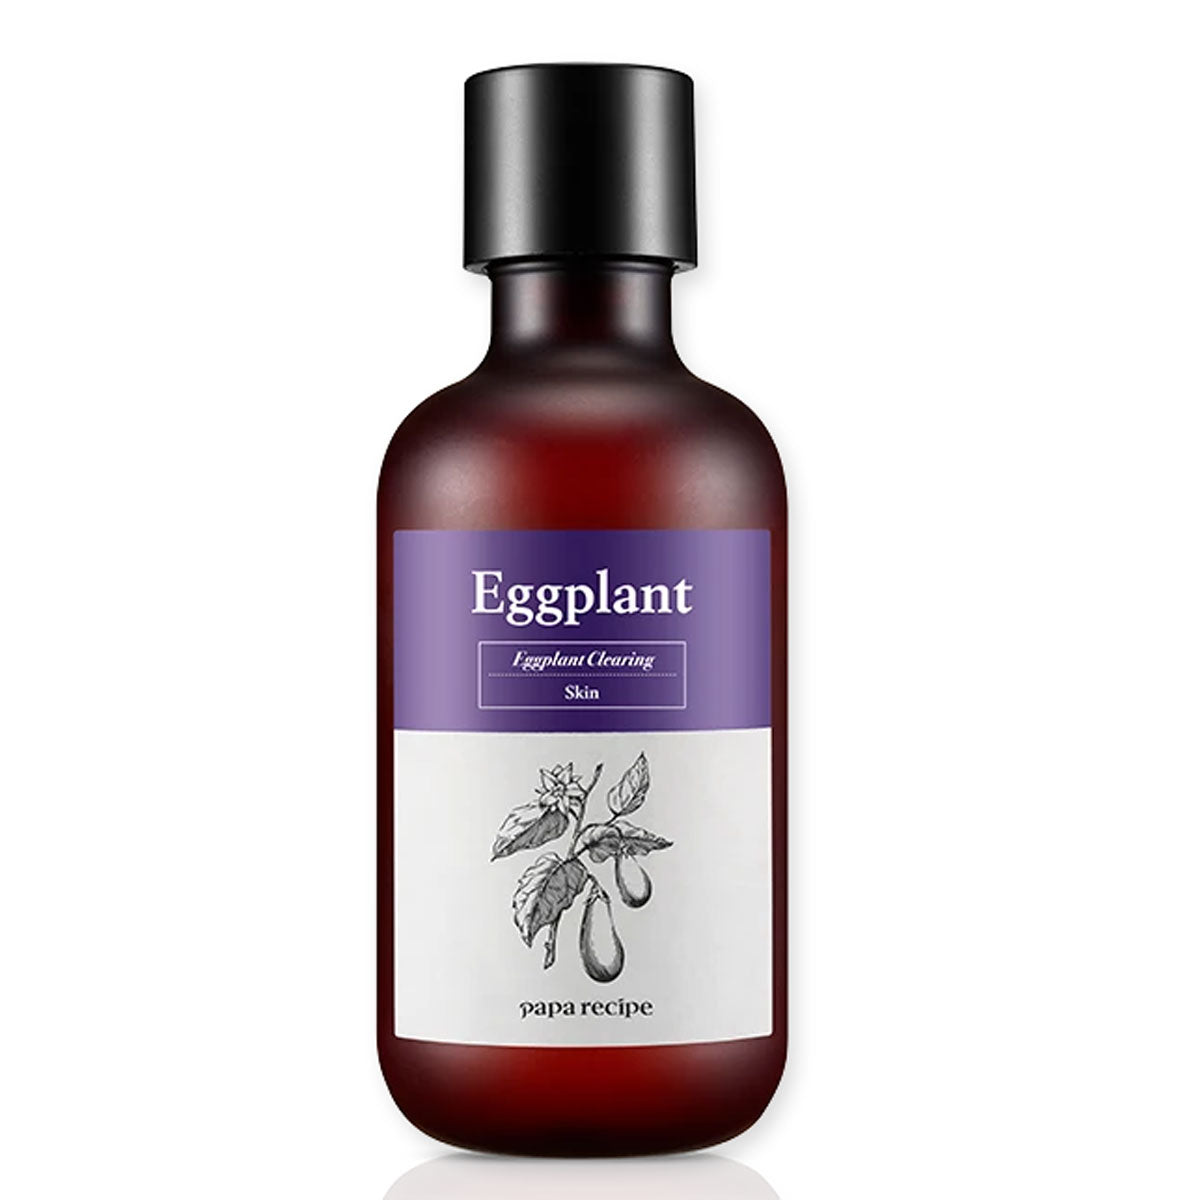 Papa Recipe - Eggplant Clearing Skin - 200 ml